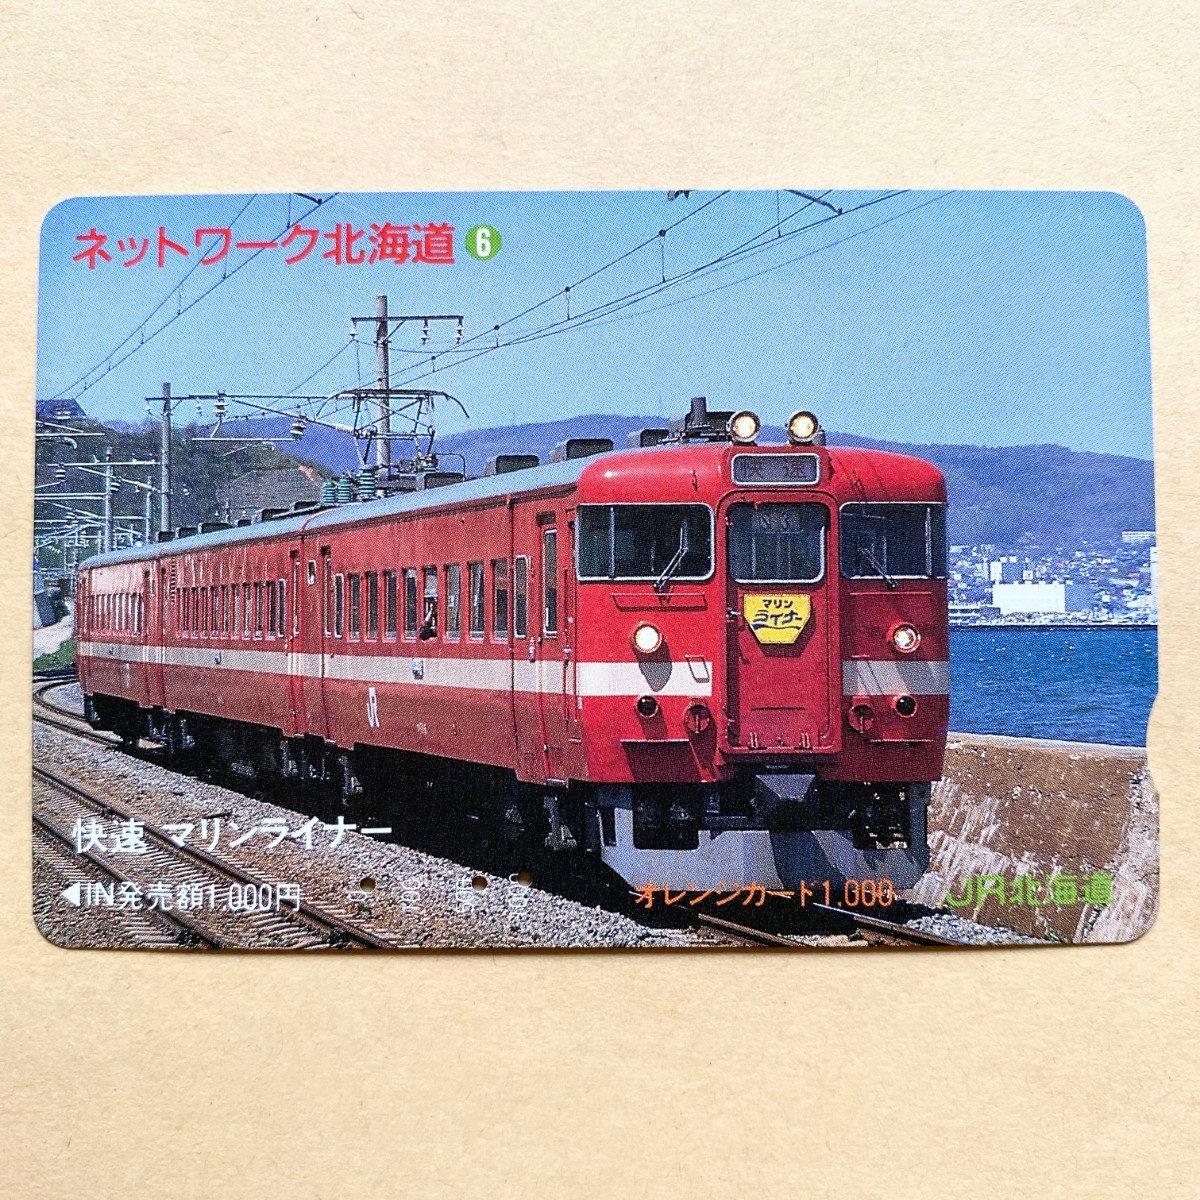 【使用済】 オレンジカード JR北海道 ネットワーク北海道⑥ 快速マリンライナーの画像1